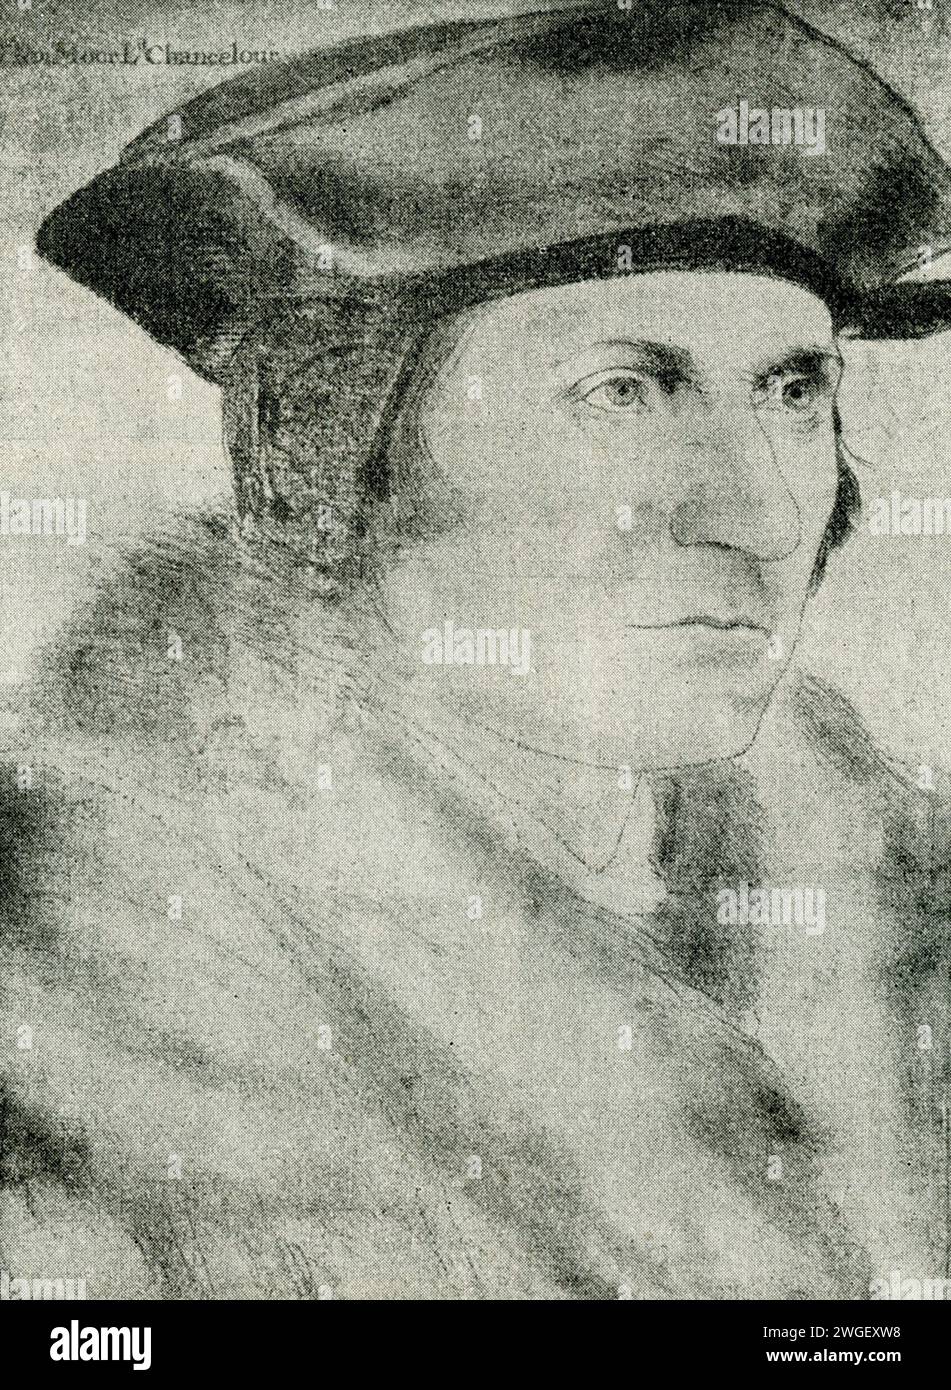 Cette peinture de Thomas Moore a été réalisée par Hans Hokbein et est conservée au château de Windsor en Angleterre. Sir Thomas More était un avocat anglais, juge, philosophe social, auteur, homme d'État, et a noté humaniste de la Renaissance. Il a également servi Henri VIII en tant que Lord High Chancelier d'Angleterre d'octobre 1529 à mai 1532. Hans Holbein le Jeune (mort en 1543) était un peintre et graveur germano-suisse qui a travaillé dans un style de la Renaissance du Nord, et est considéré comme l'un des plus grands portraitistes du 16e siècle. Banque D'Images